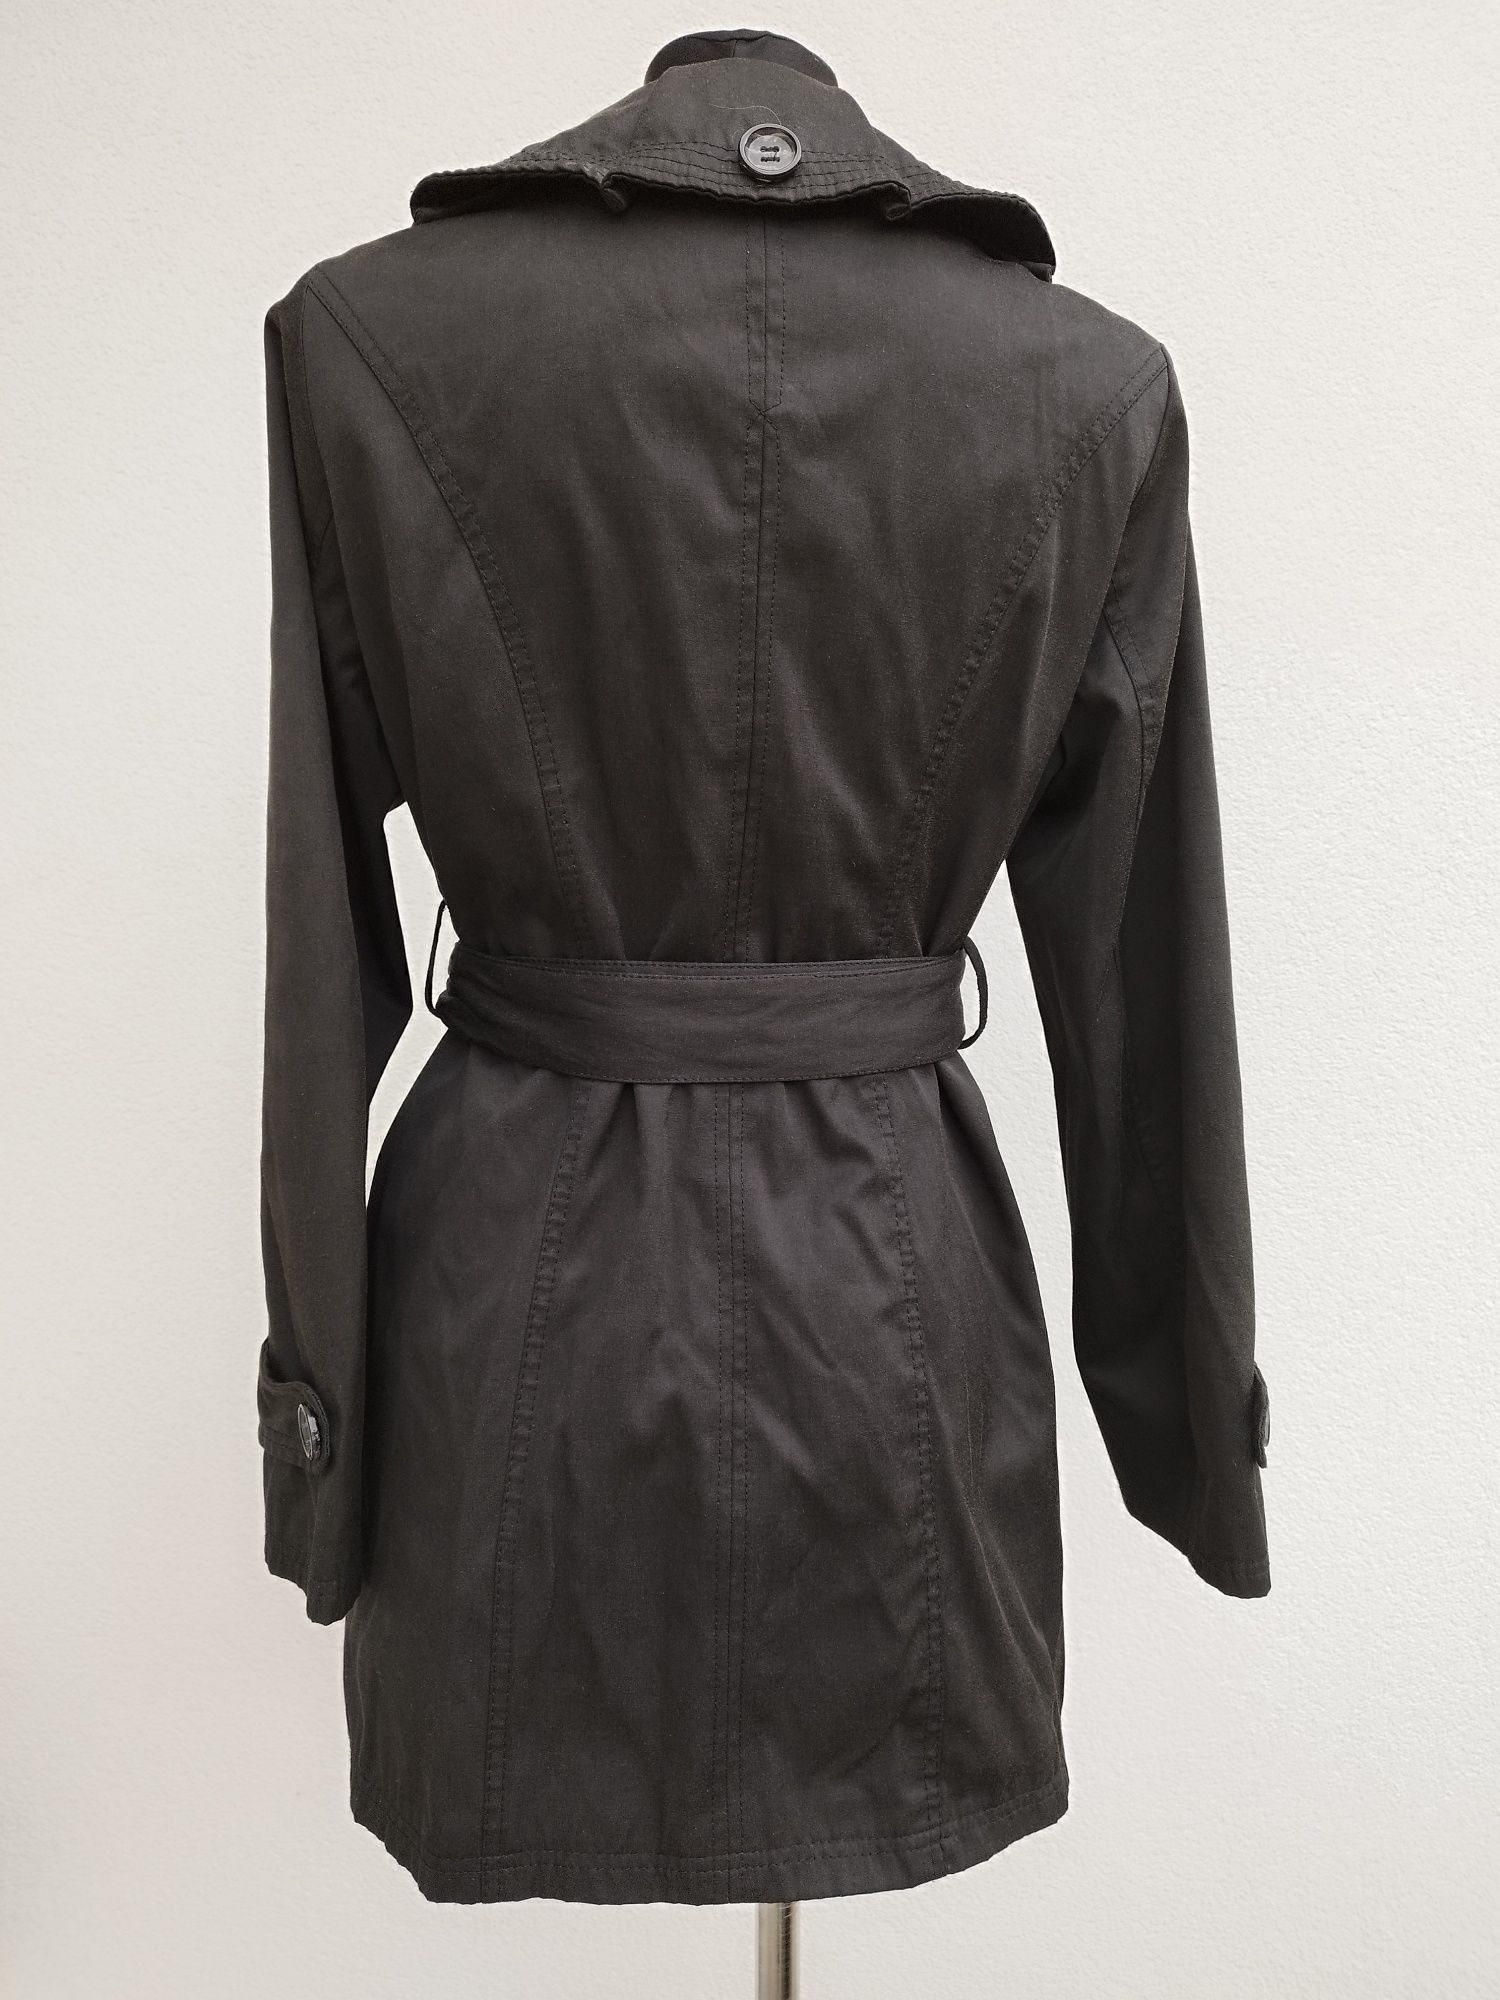 Czarny płaszczyk RCC fashion rozmiar 42/XL stan bdb